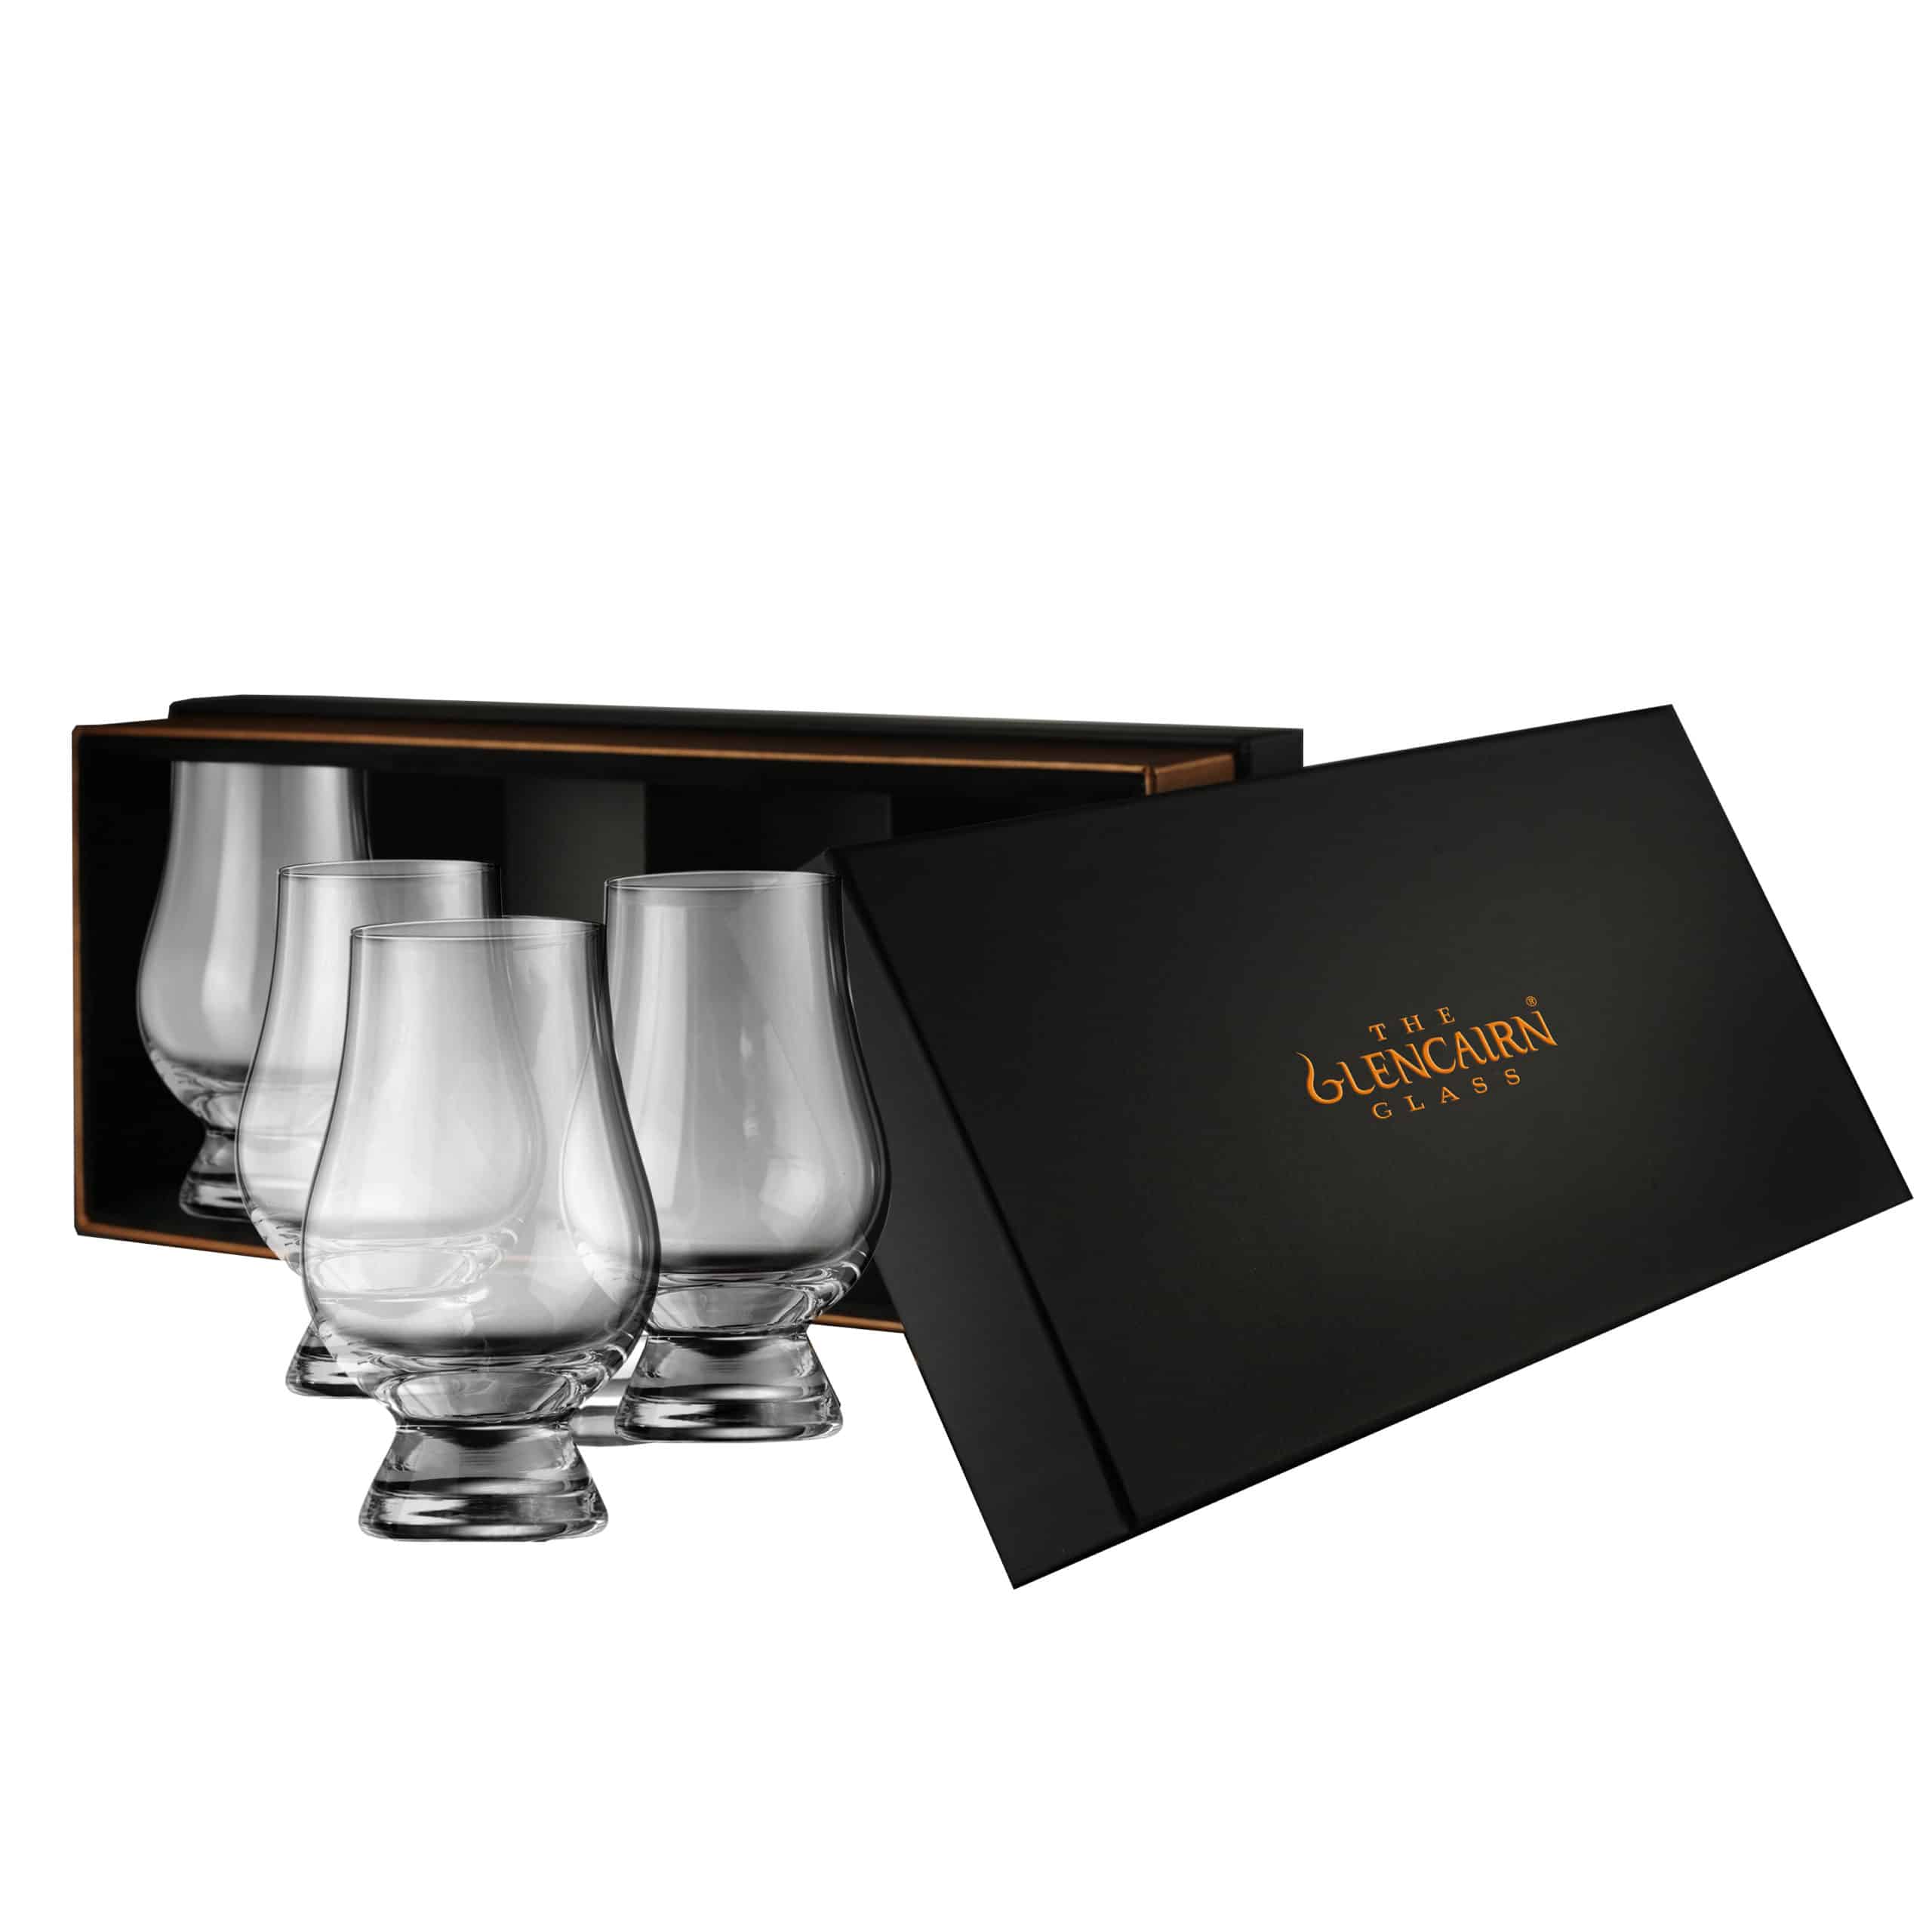 Glencairn Glass Set of 4 in Presentation Box | Whisky Glasses Set